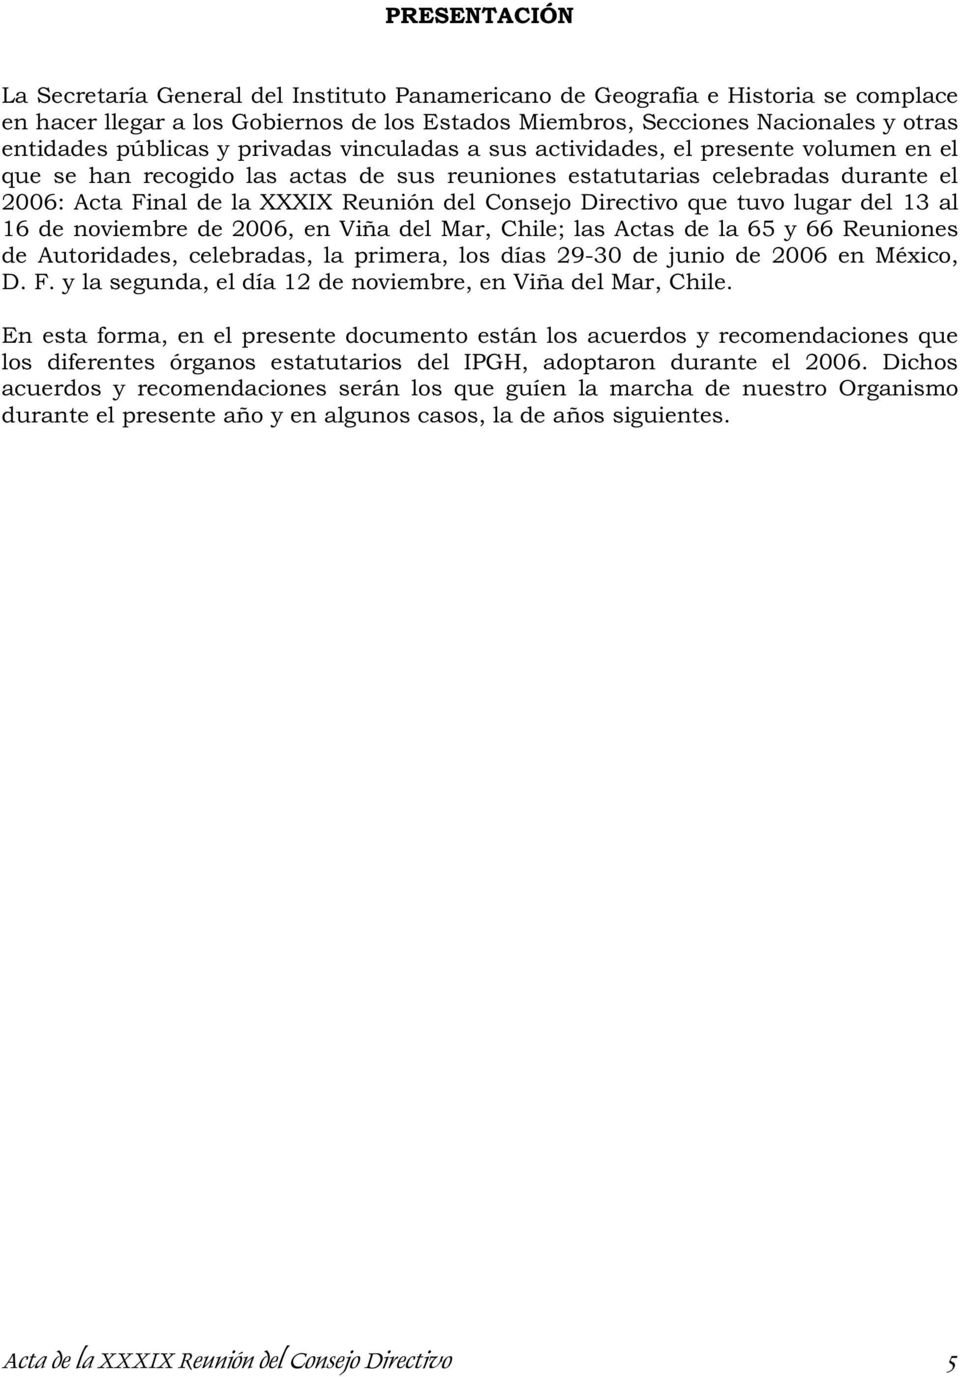 Consejo Directivo que tuvo lugar del 13 al 16 de noviembre de 2006, en Viña del Mar, Chile; las Actas de la 65 y 66 Reuniones de Autoridades, celebradas, la primera, los días 29-30 de junio de 2006